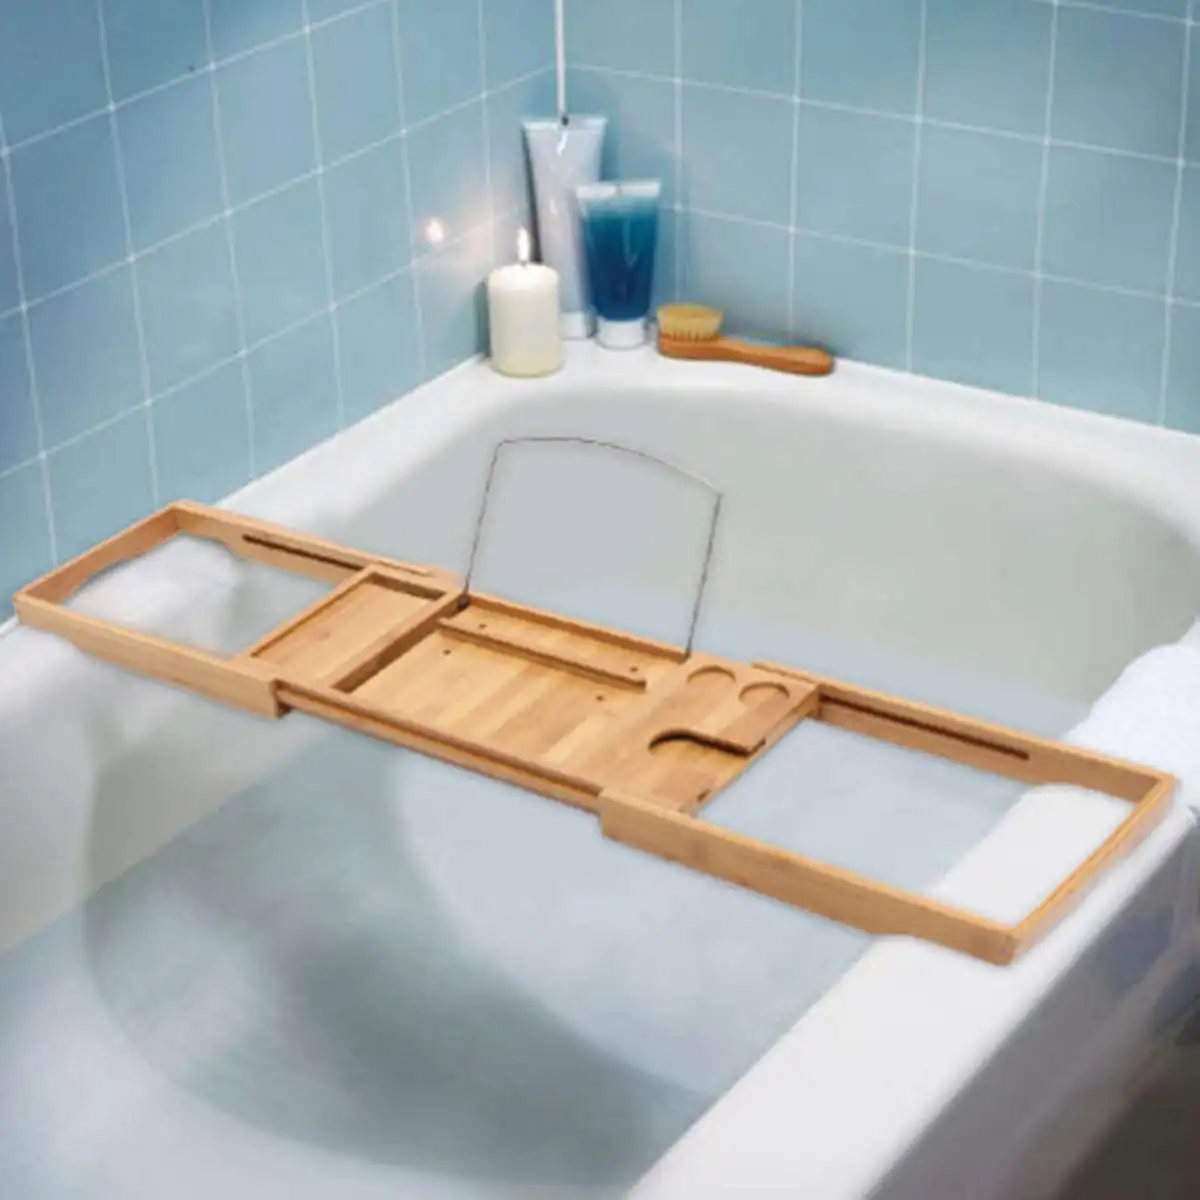 105X22X4 см выдвижной бамбуковый поднос для ванной Деревянная Полка Caddy Полка Подставка для ванной комнаты Органайзер аксессуары